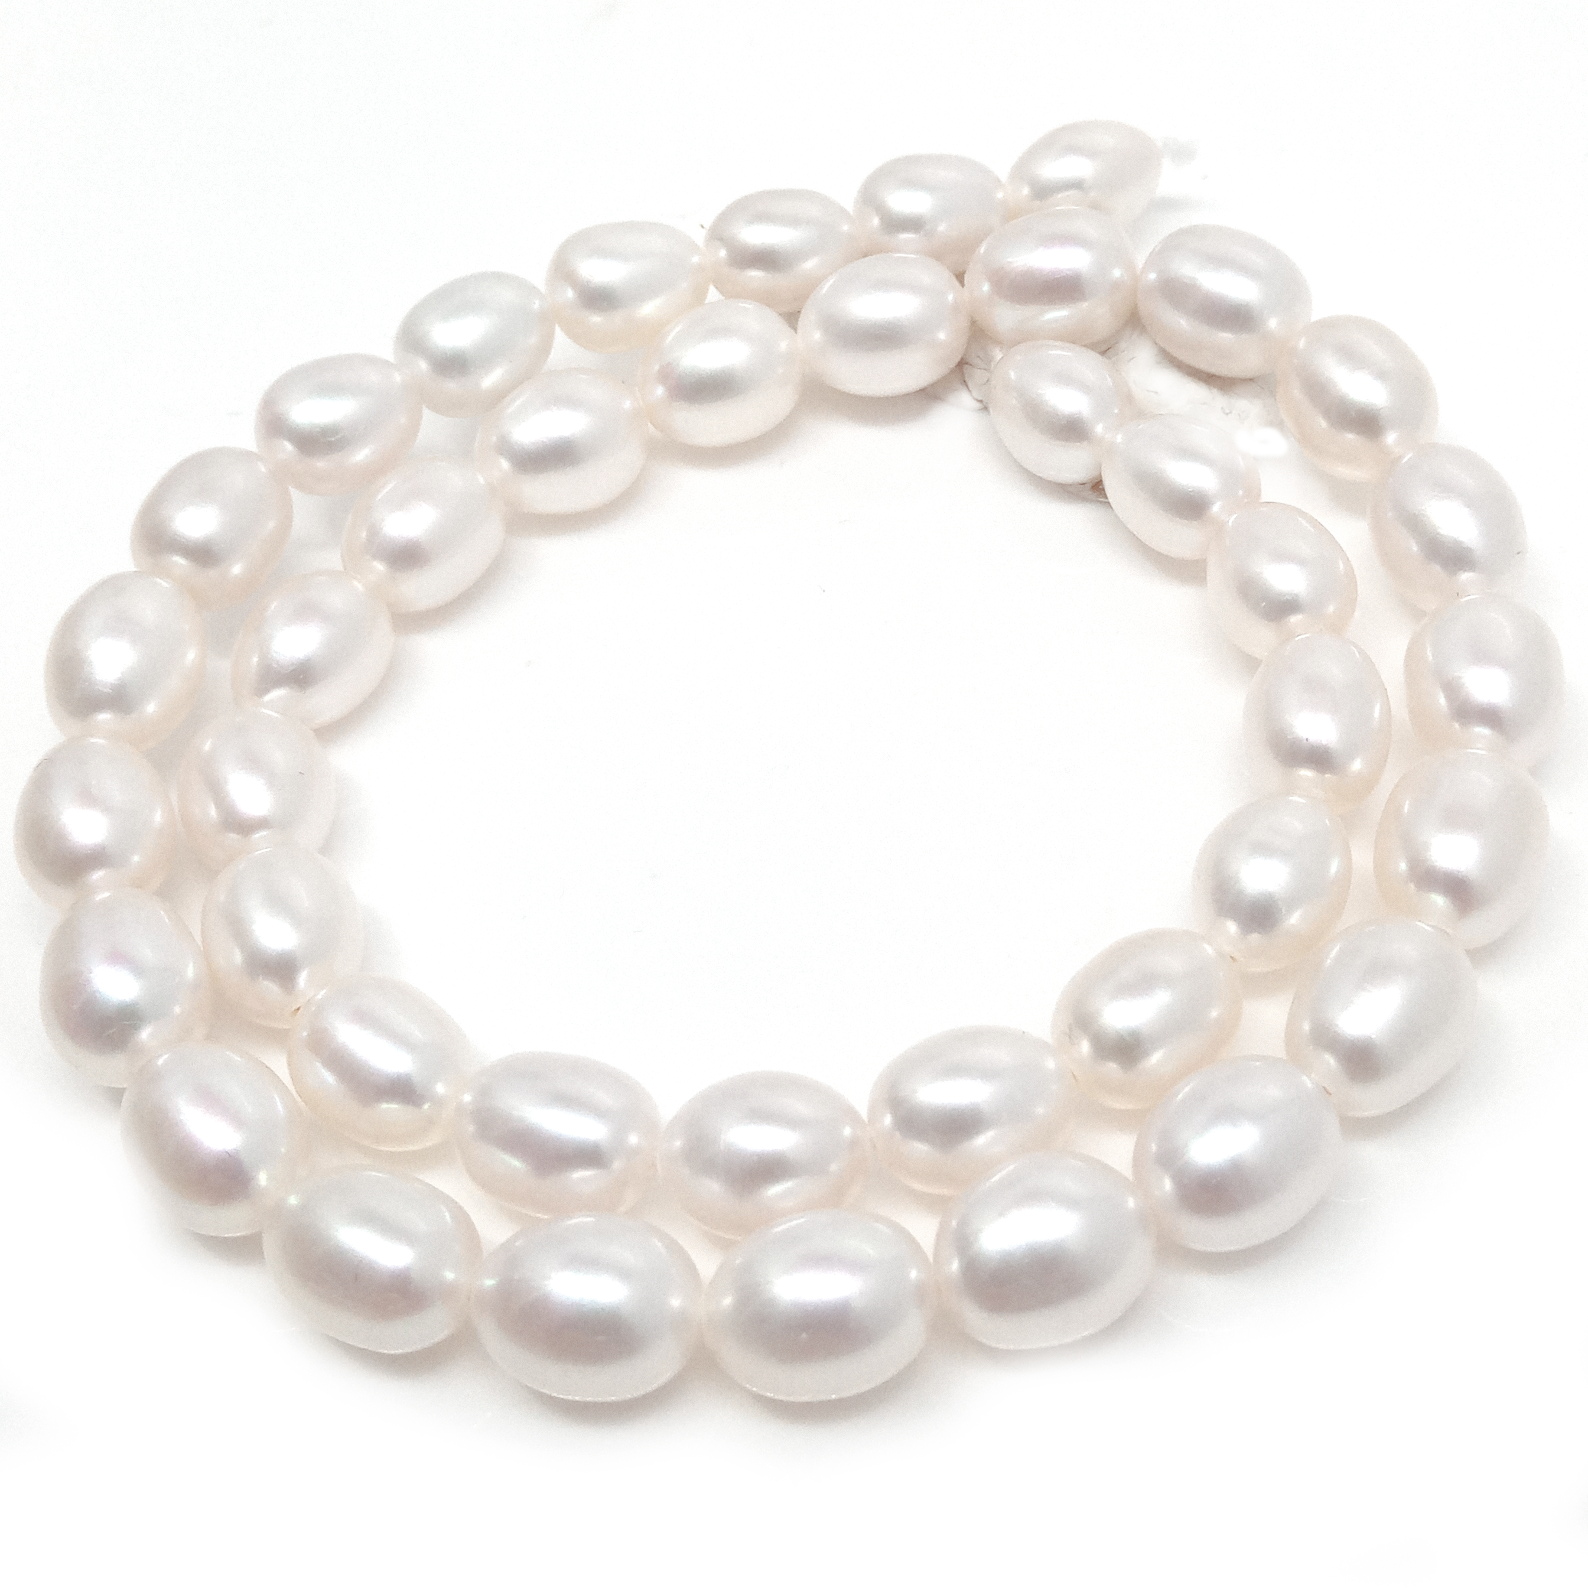 White 7.5-8mm AAA Elliptical Pearls